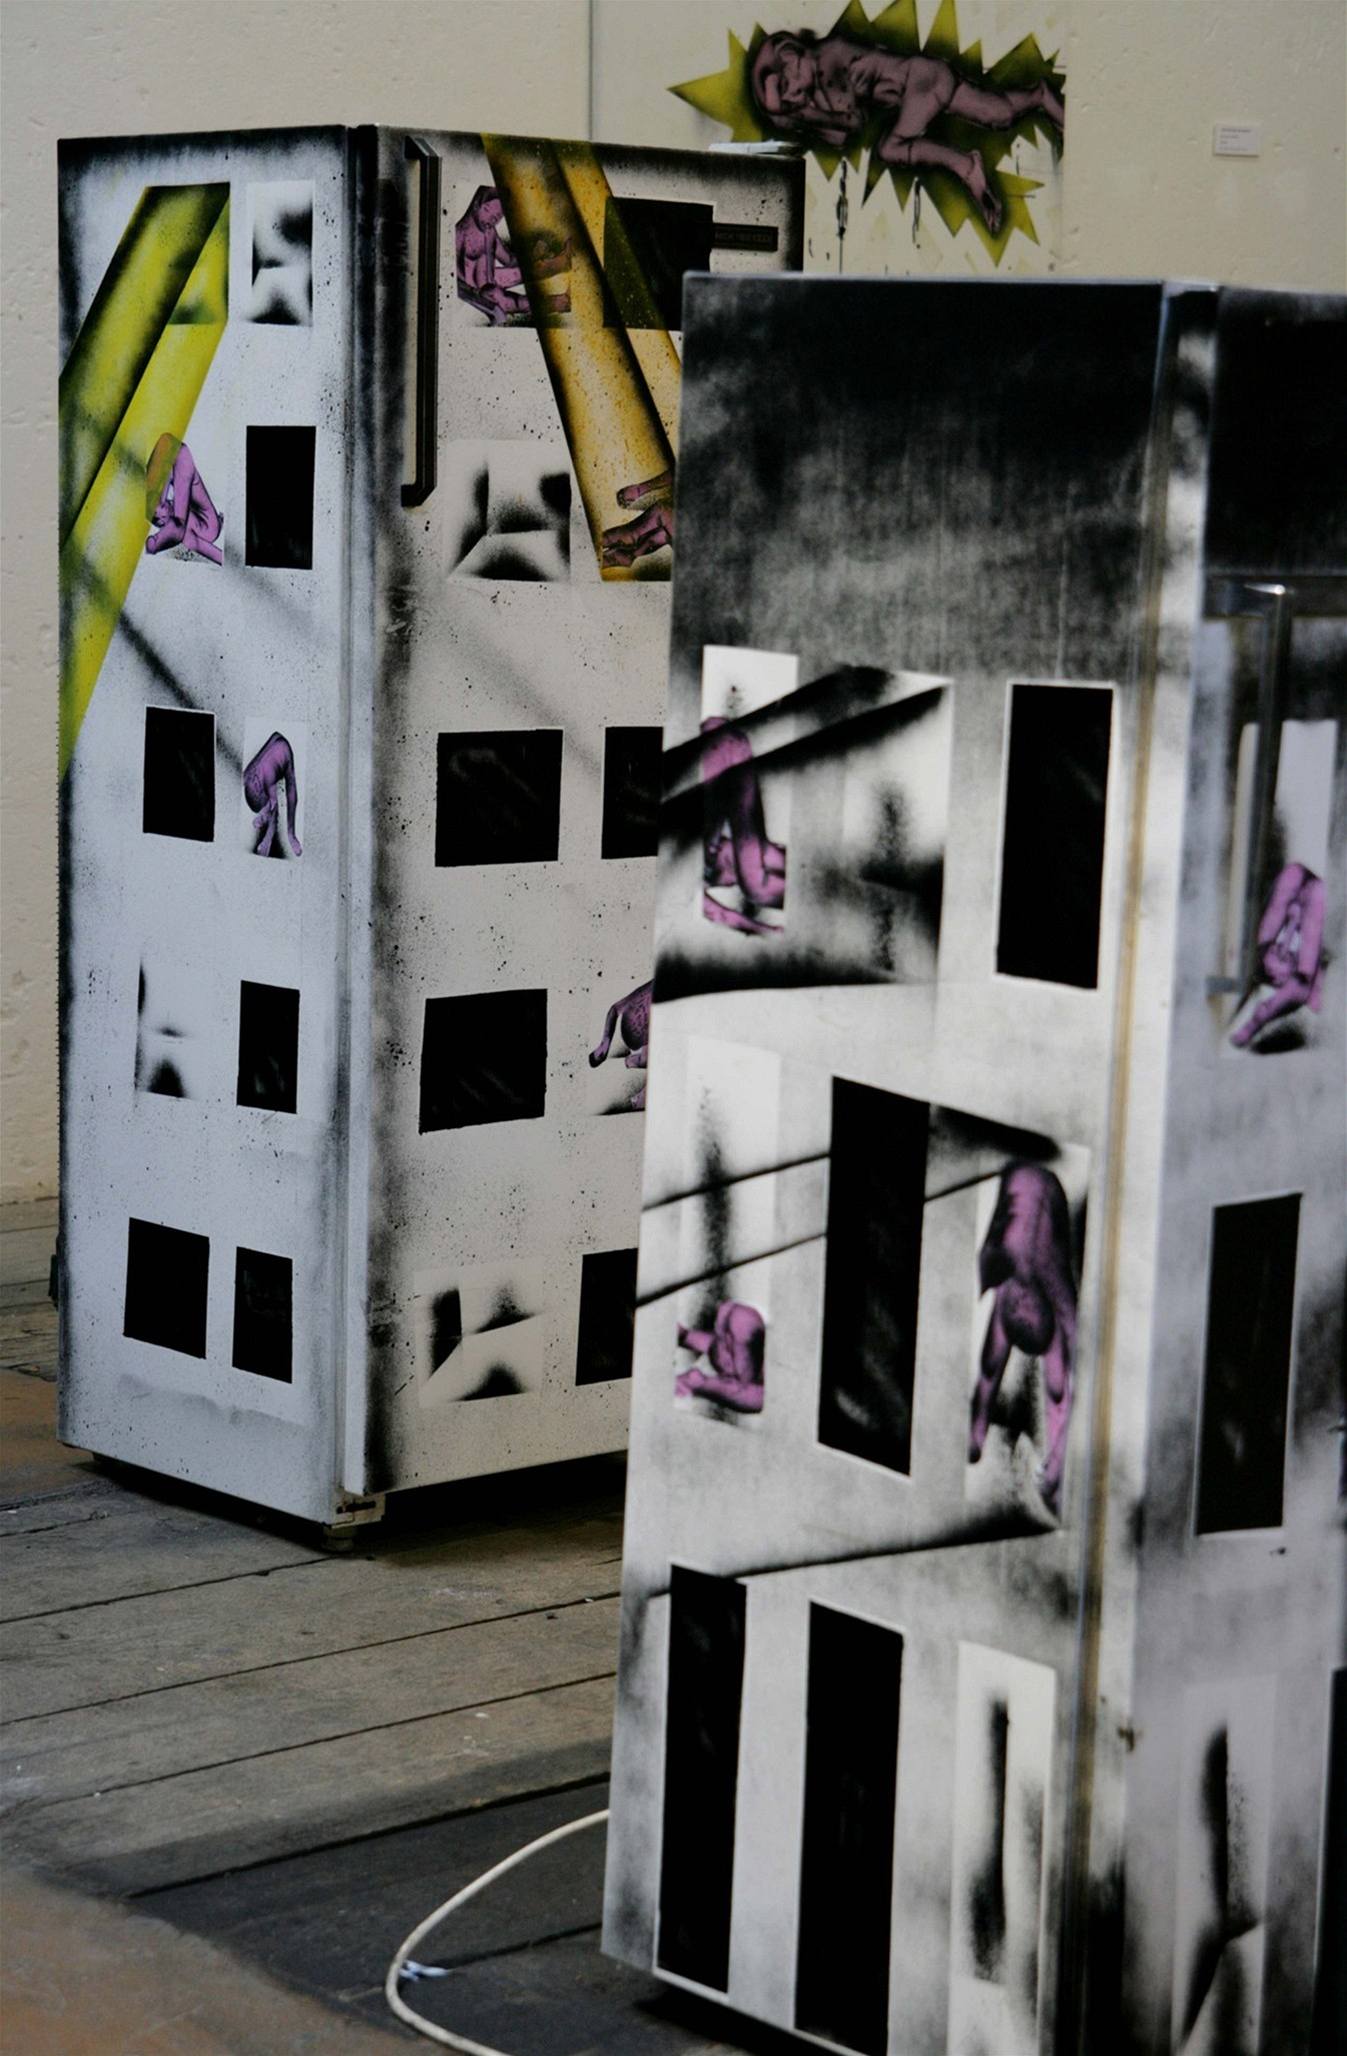 Domy z lednic. Callipo Boys, 2008; pohled do instalace tvořené v Karlin Studios lednicemi, spreji a xerokopiemi